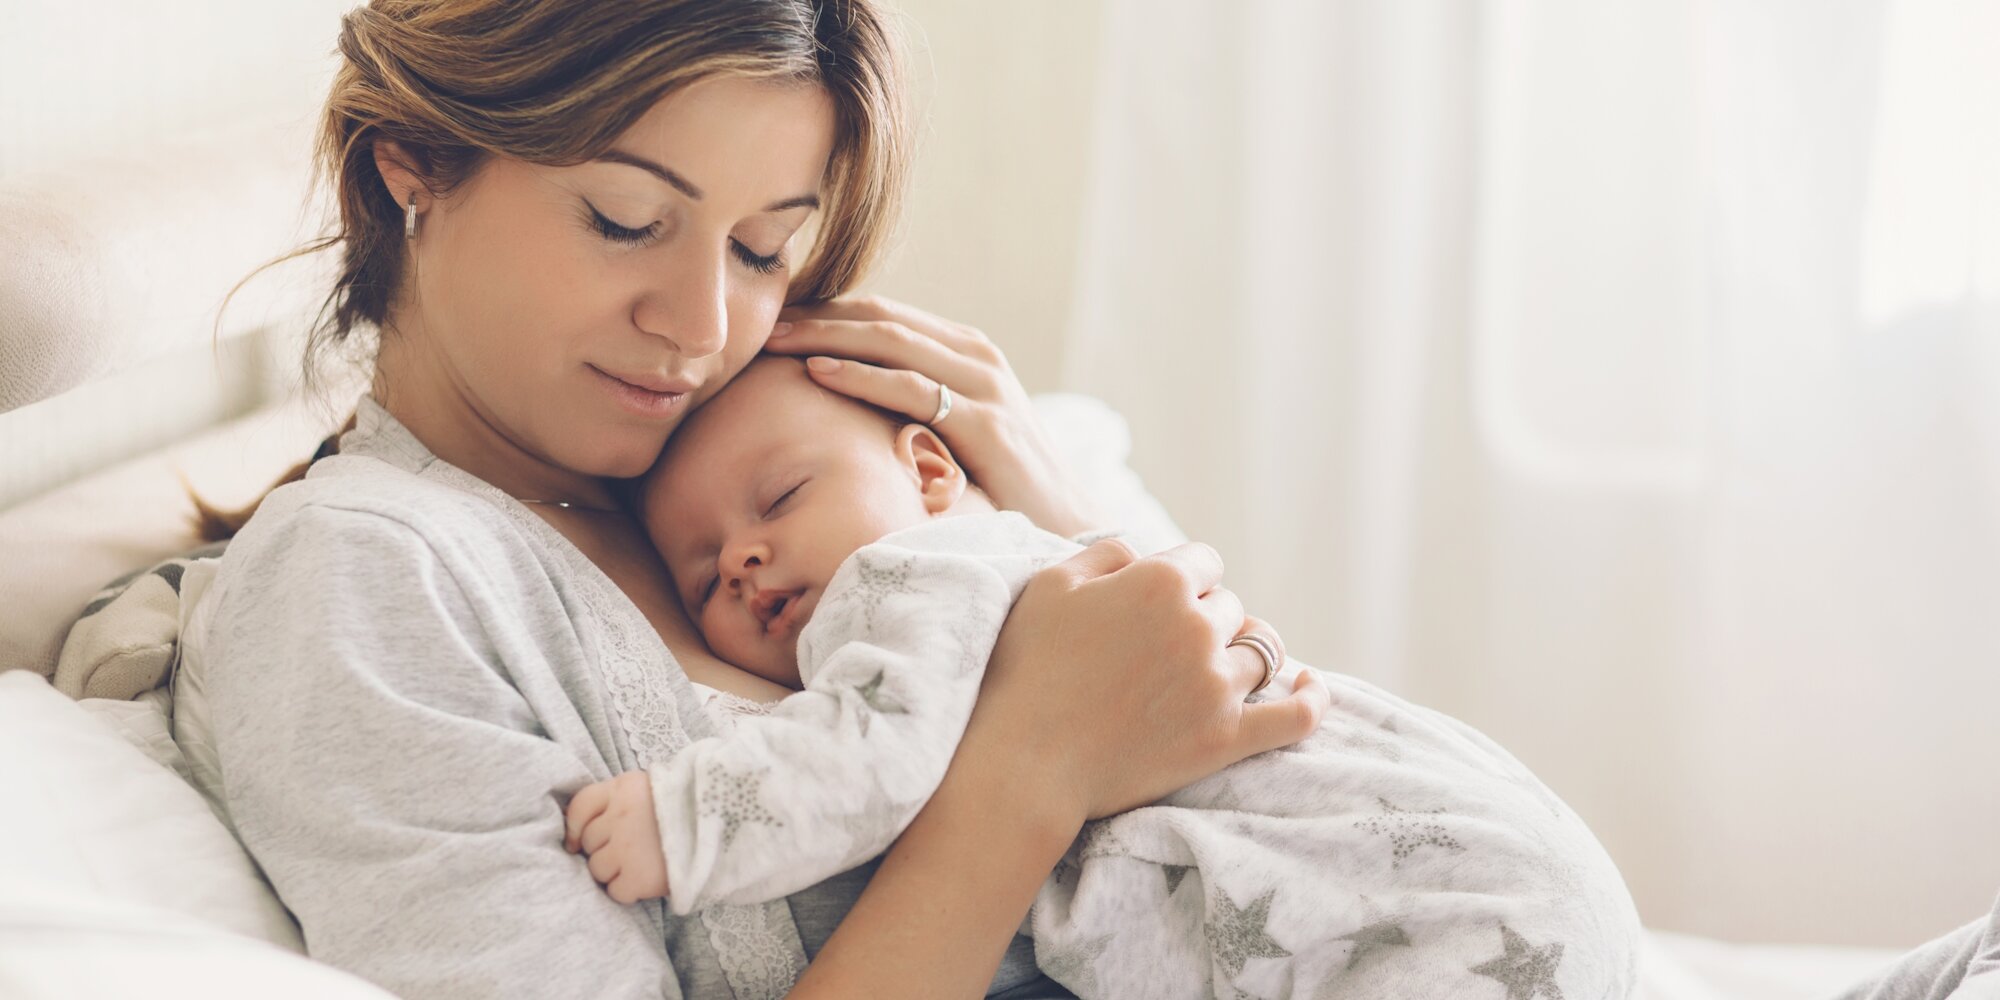 Online kurz pro maminky: Spánek dětí 0-3 roky